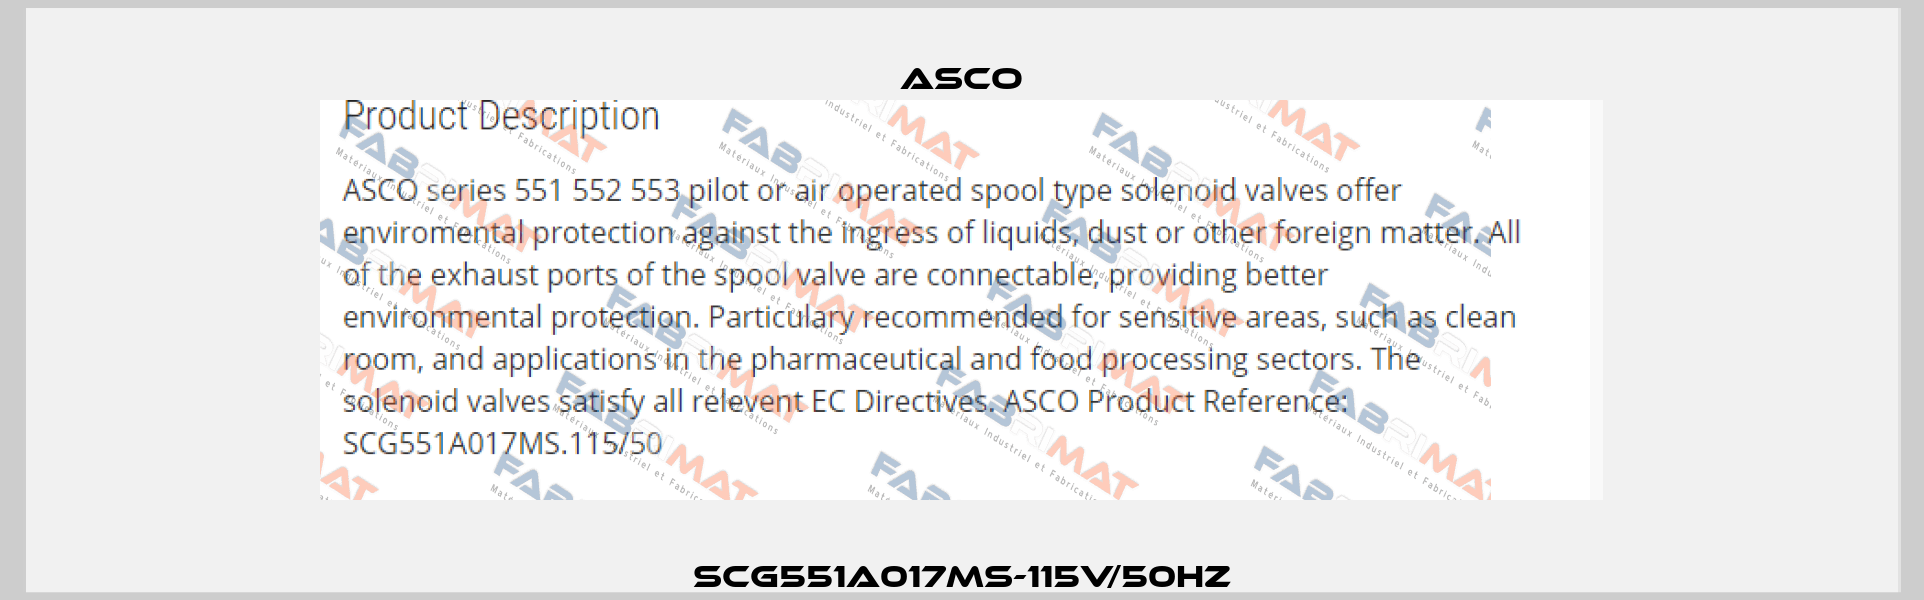 SCG551A017MS-115V/50HZ Asco